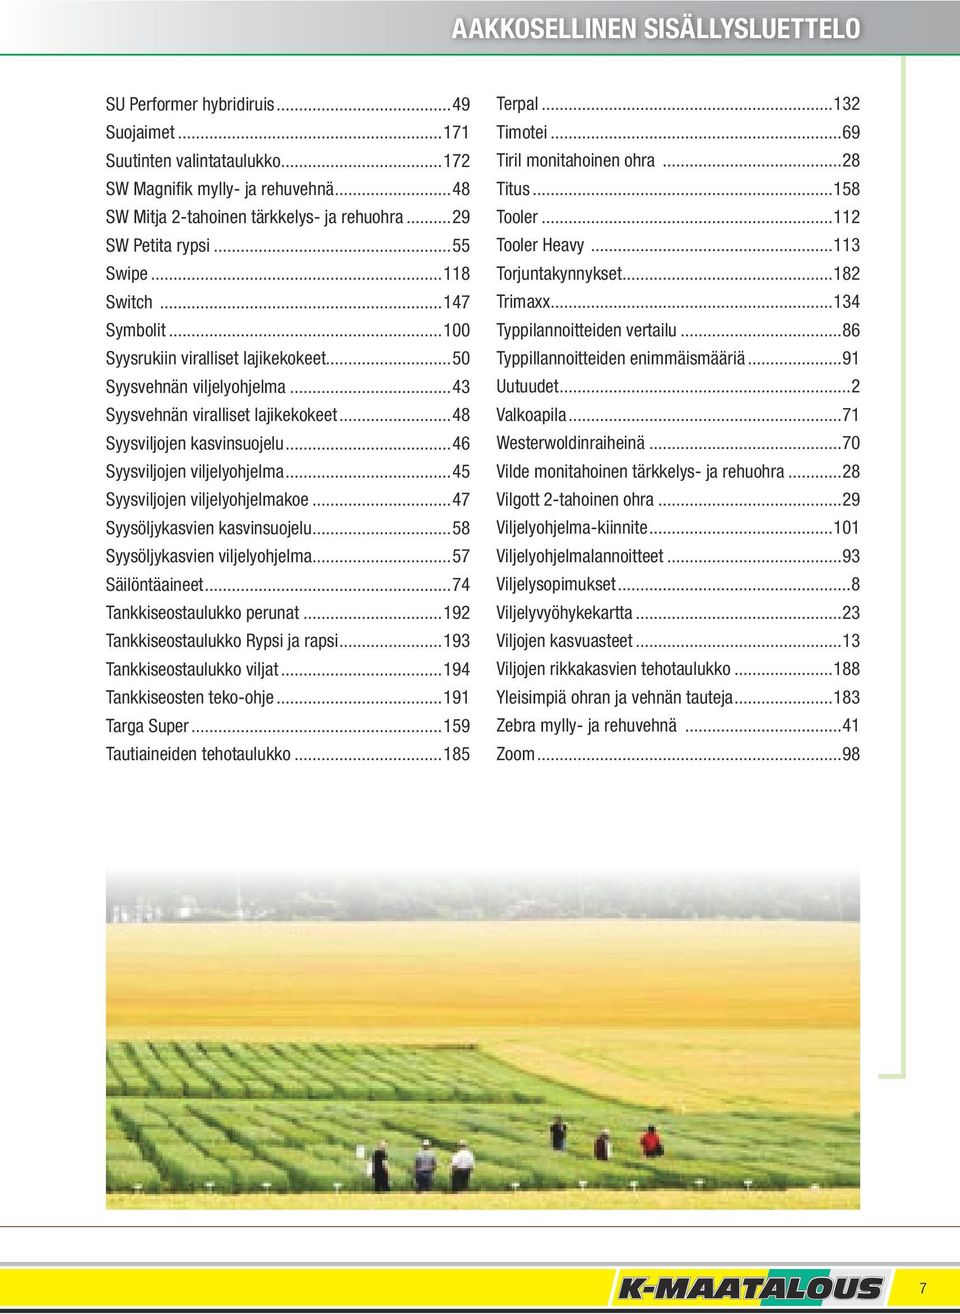 ..48 Syysviljojen kasvinsuojelu...46 Syysviljojen viljelyohjelma...45 Syysviljojen viljelyohjelmakoe...47 Syysöljykasvien kasvinsuojelu...58 Syysöljykasvien viljelyohjelma...57 Säilöntäaineet.